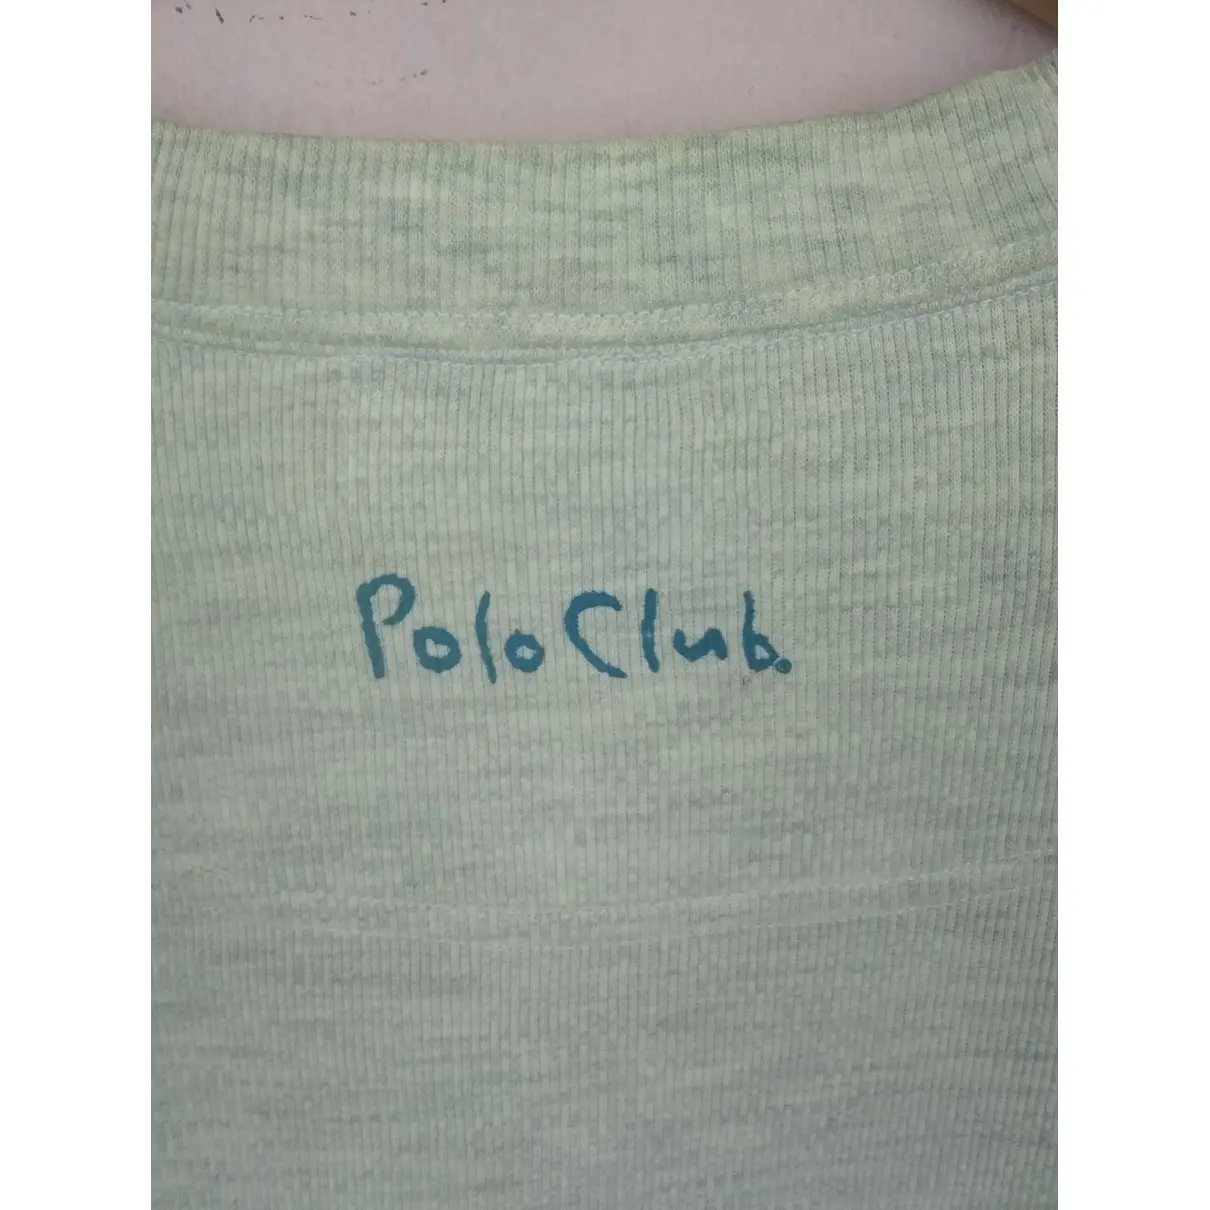 Polo shirt Polo Ralph Lauren